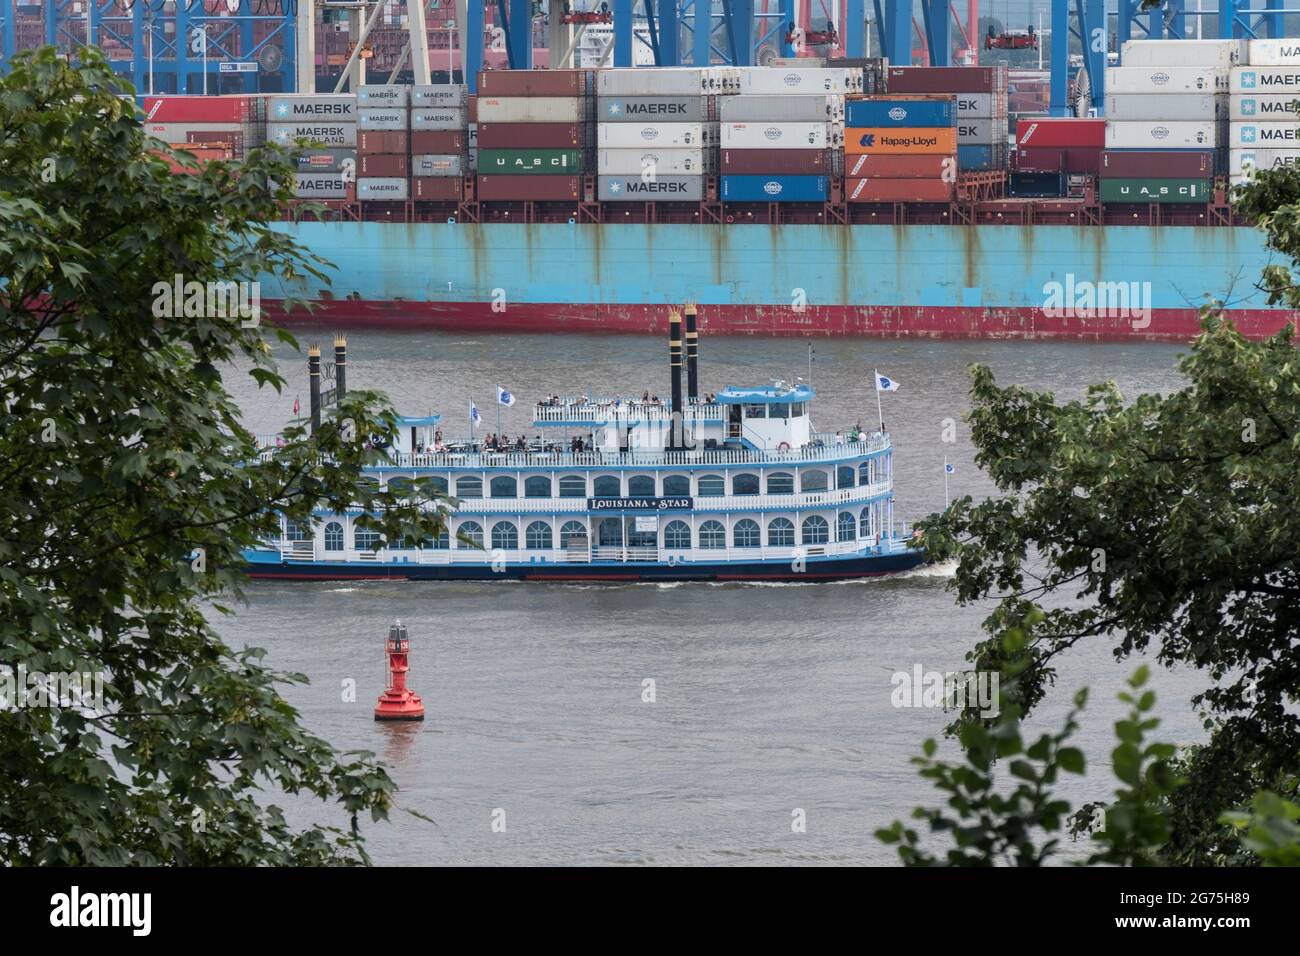 Barkasse auf der Elbe im Hamburger Hafen Foto de stock